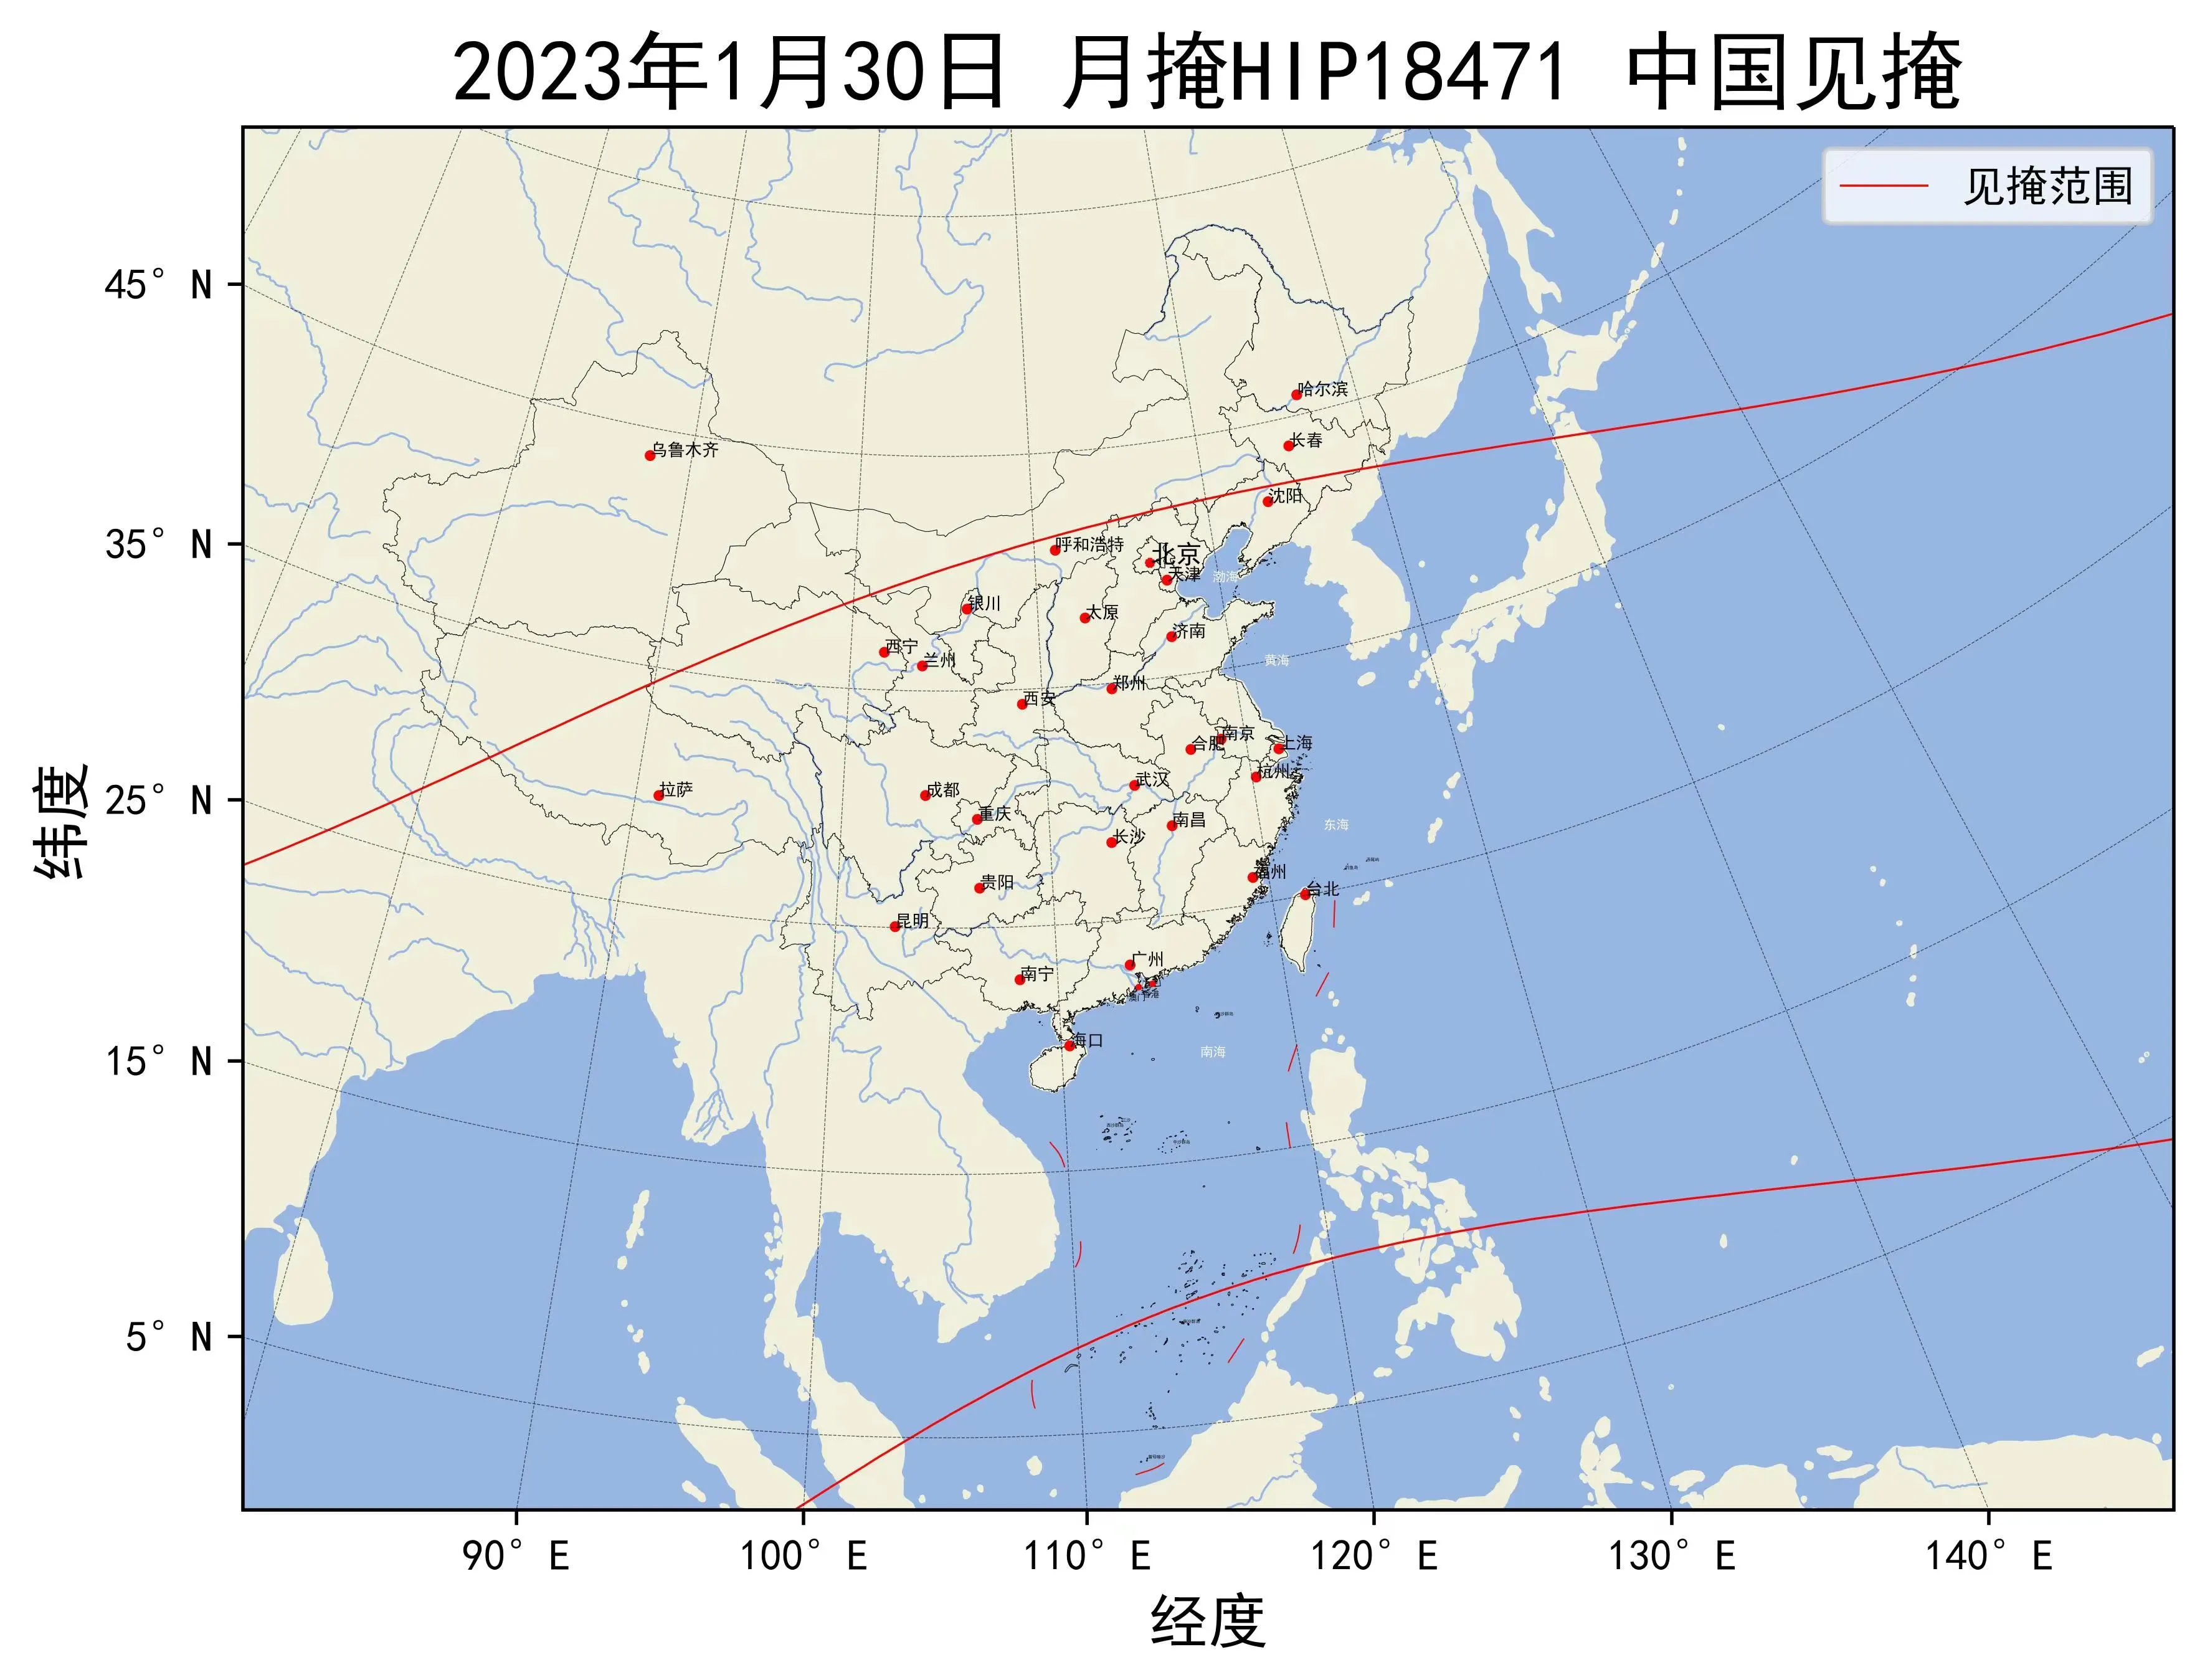 2023年1月30日月掩昴宿增五中国见掩